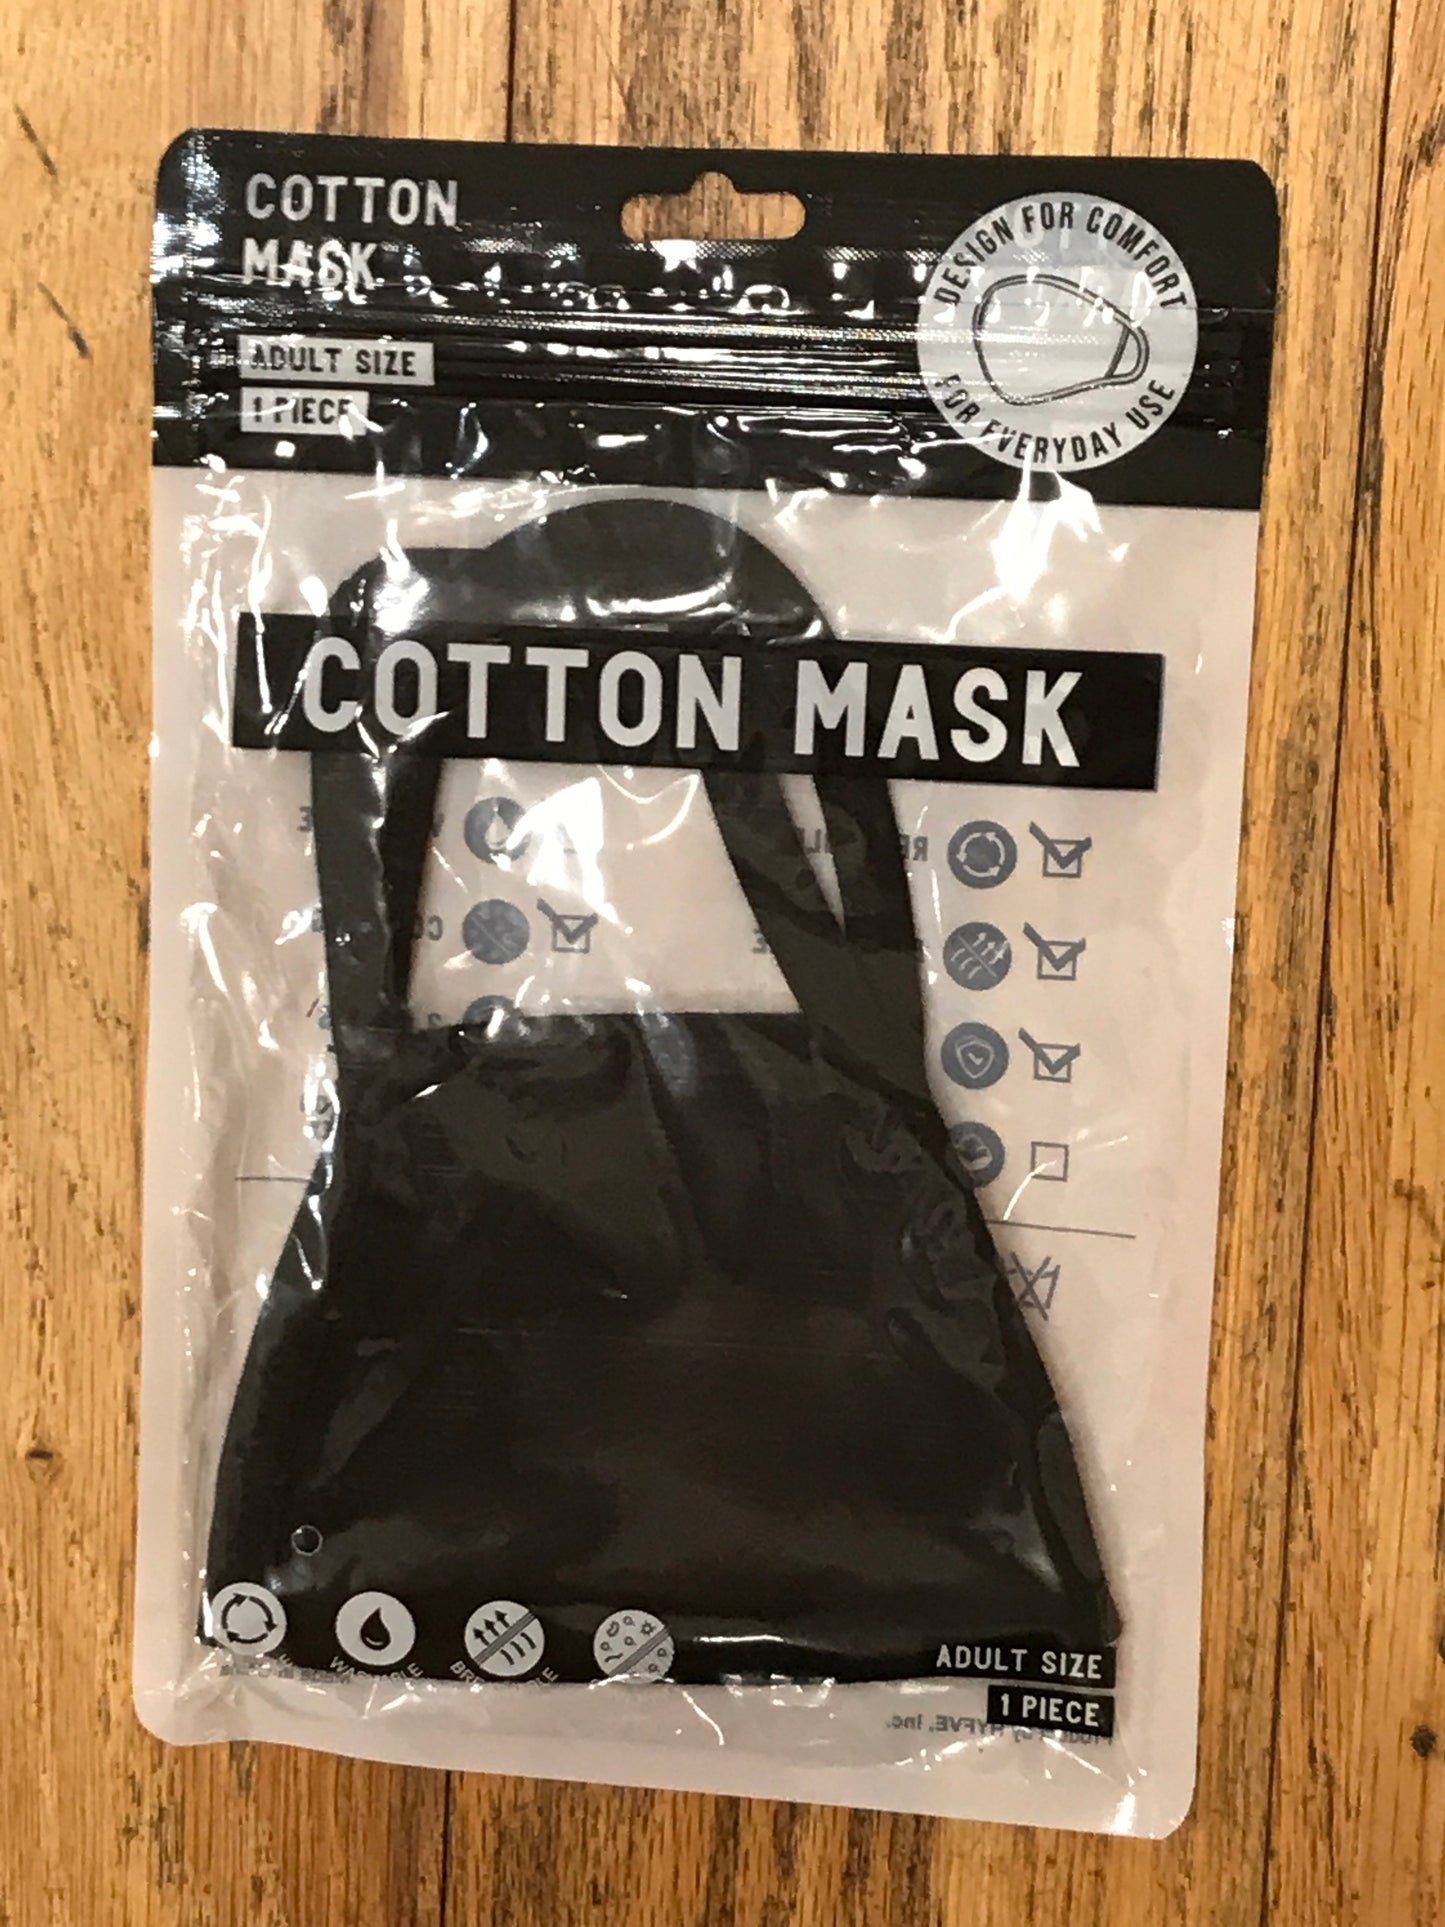 Cotton Washable & Comfy Face Masks (6 Colors!)